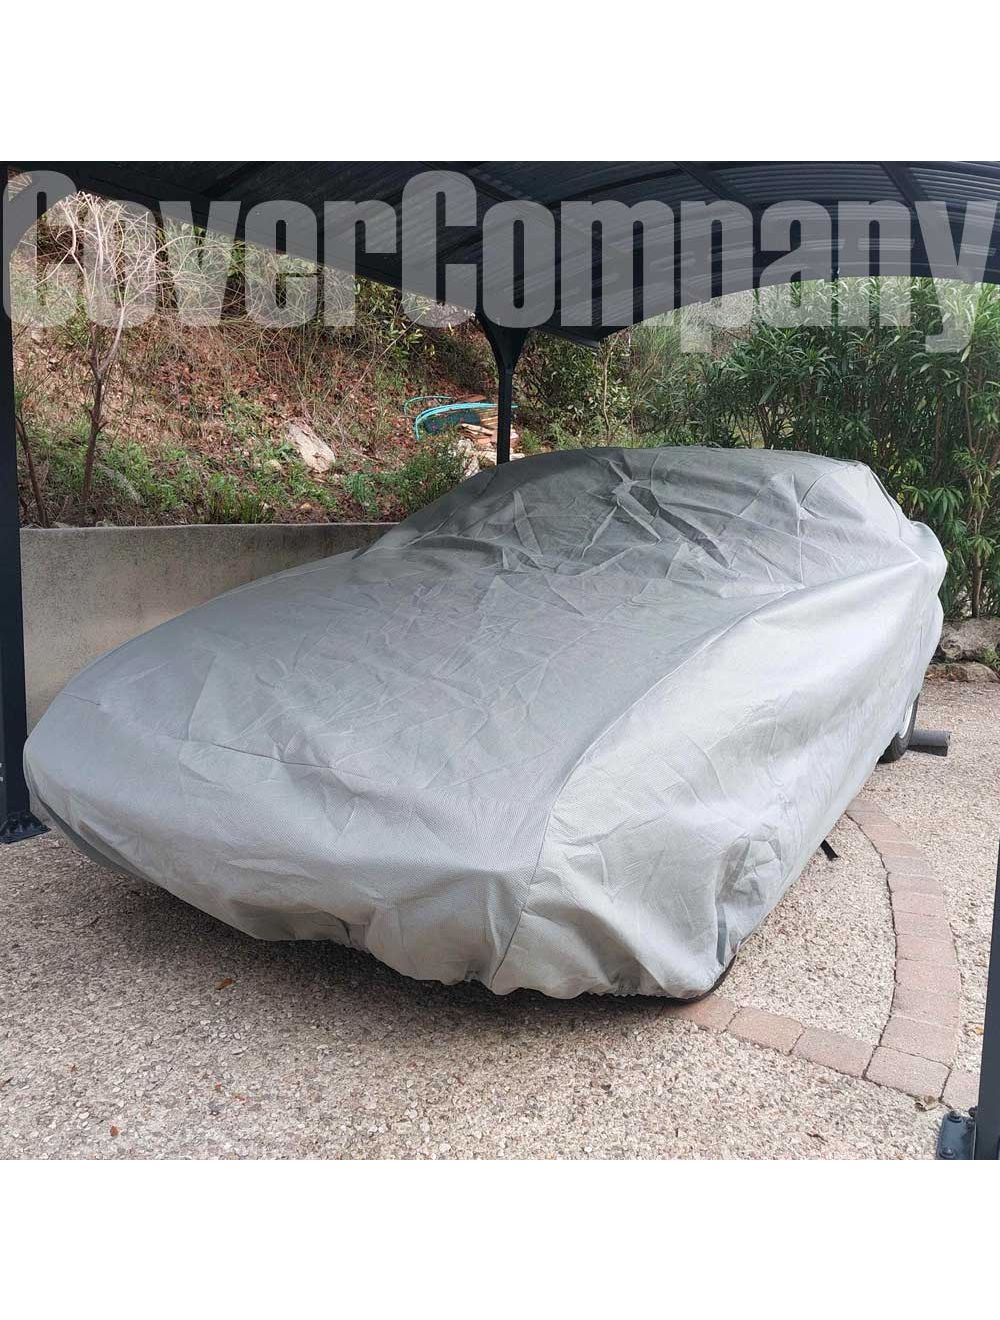 Outdoor Car Cover for Lamborghini. Waterproof Car Cover US